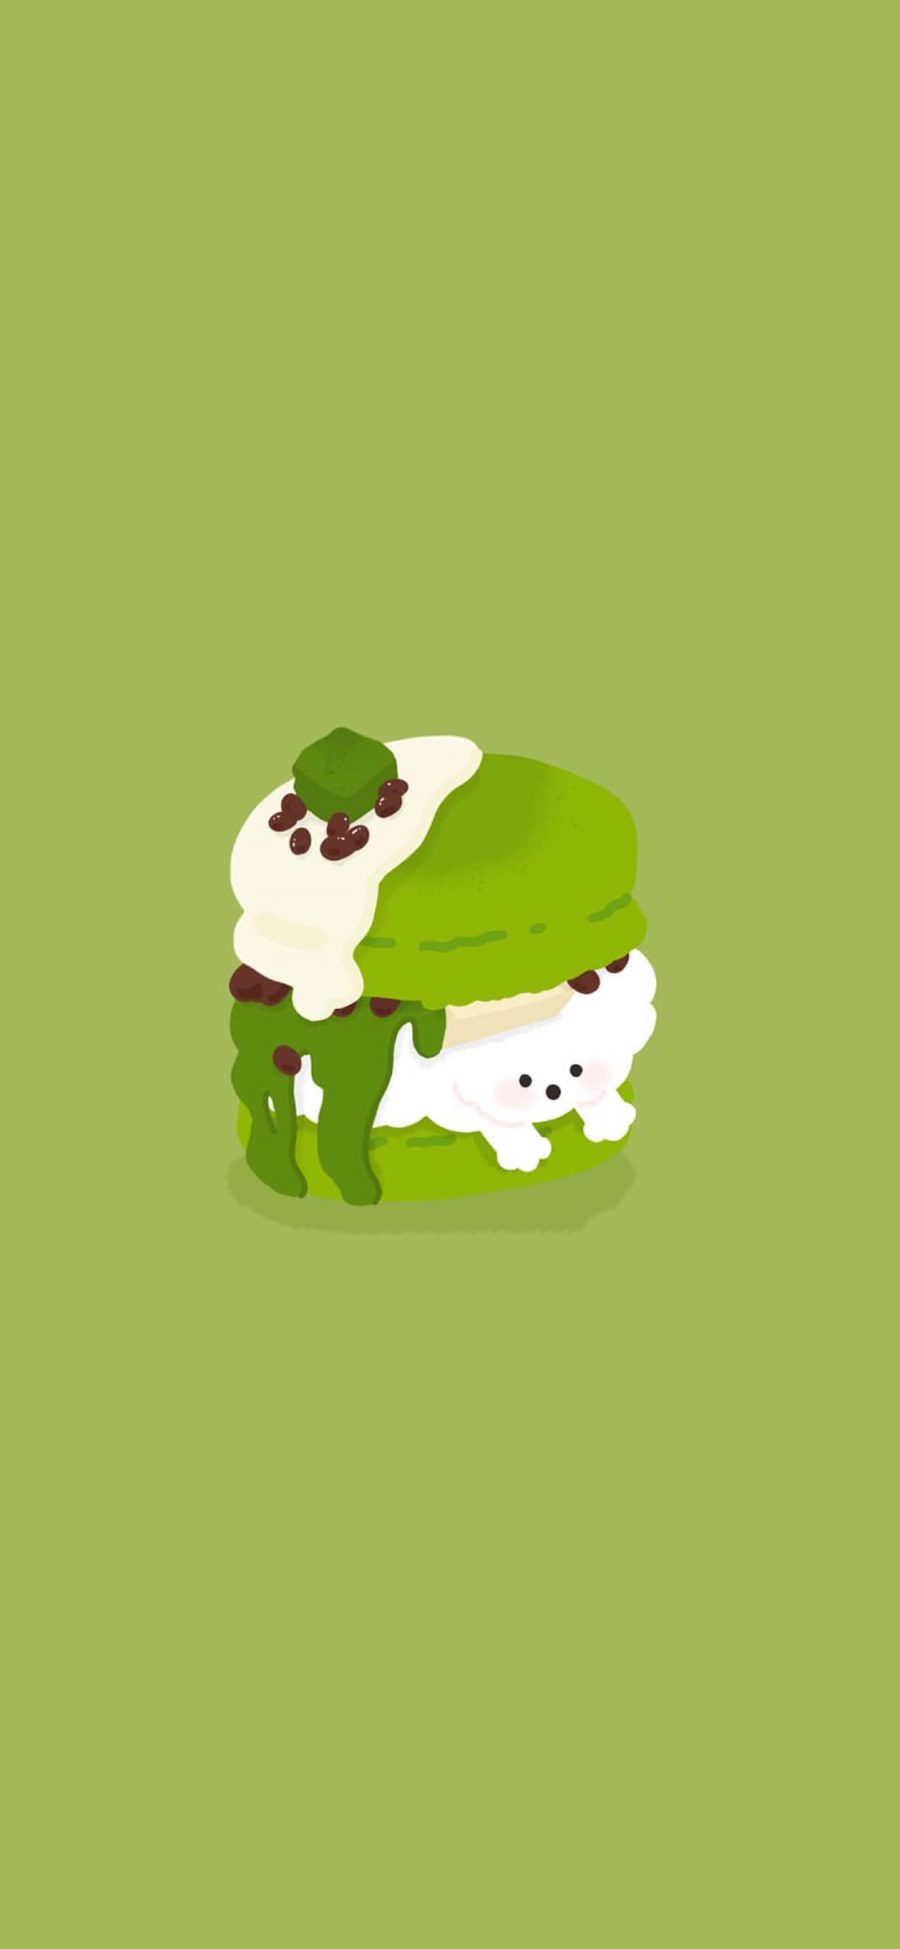 [2436×1125]卡通 狗狗 蛋糕 抹茶 绿色 苹果手机动漫壁纸图片